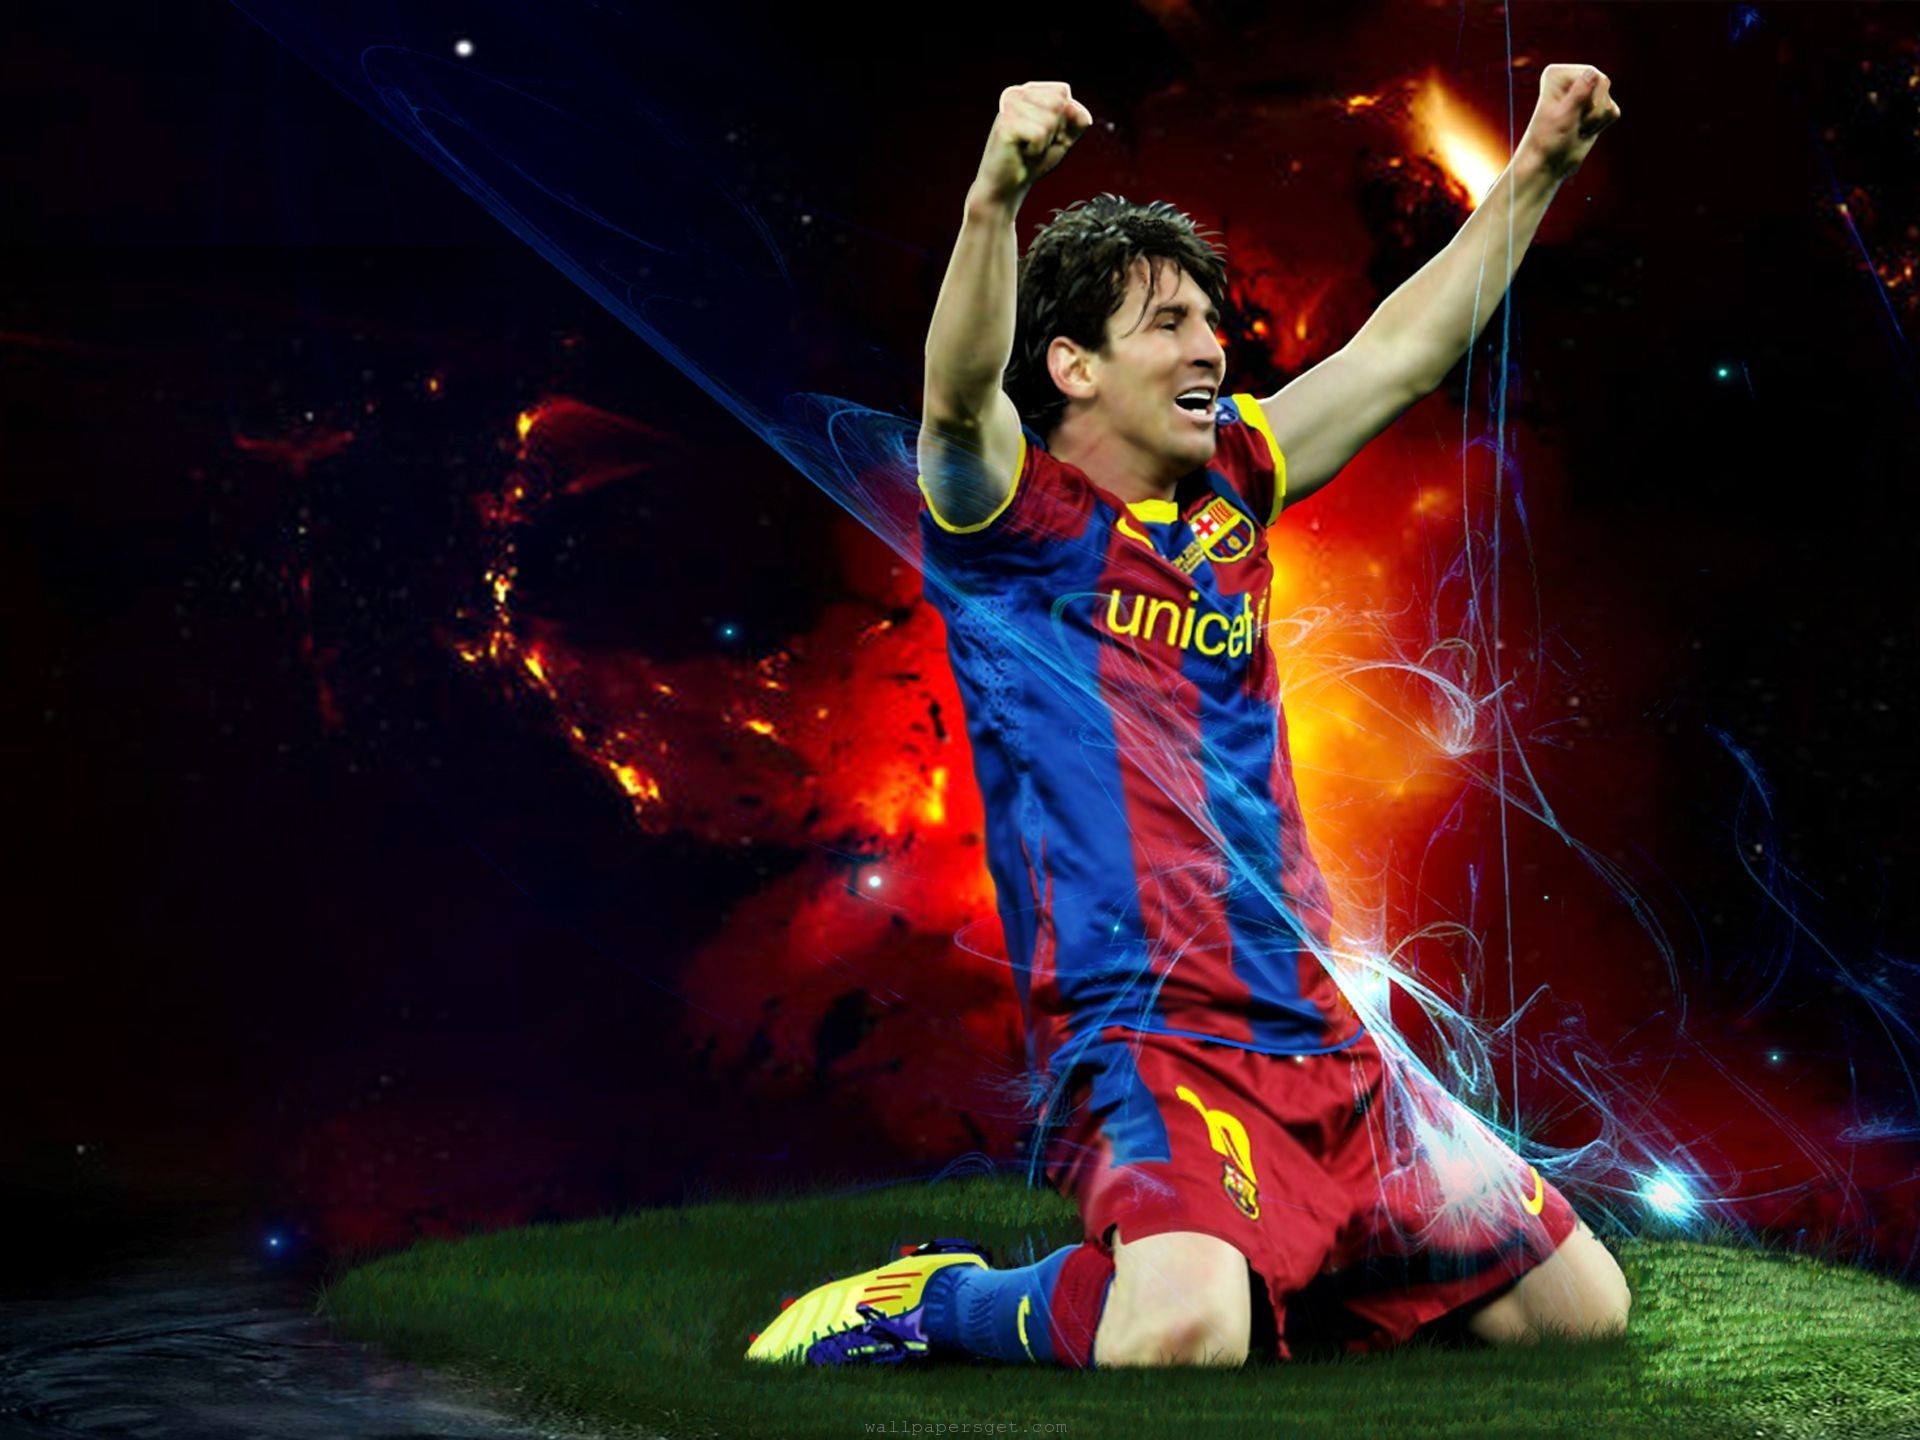 46+] Messi Soccer Player Wallpaper - WallpaperSafari